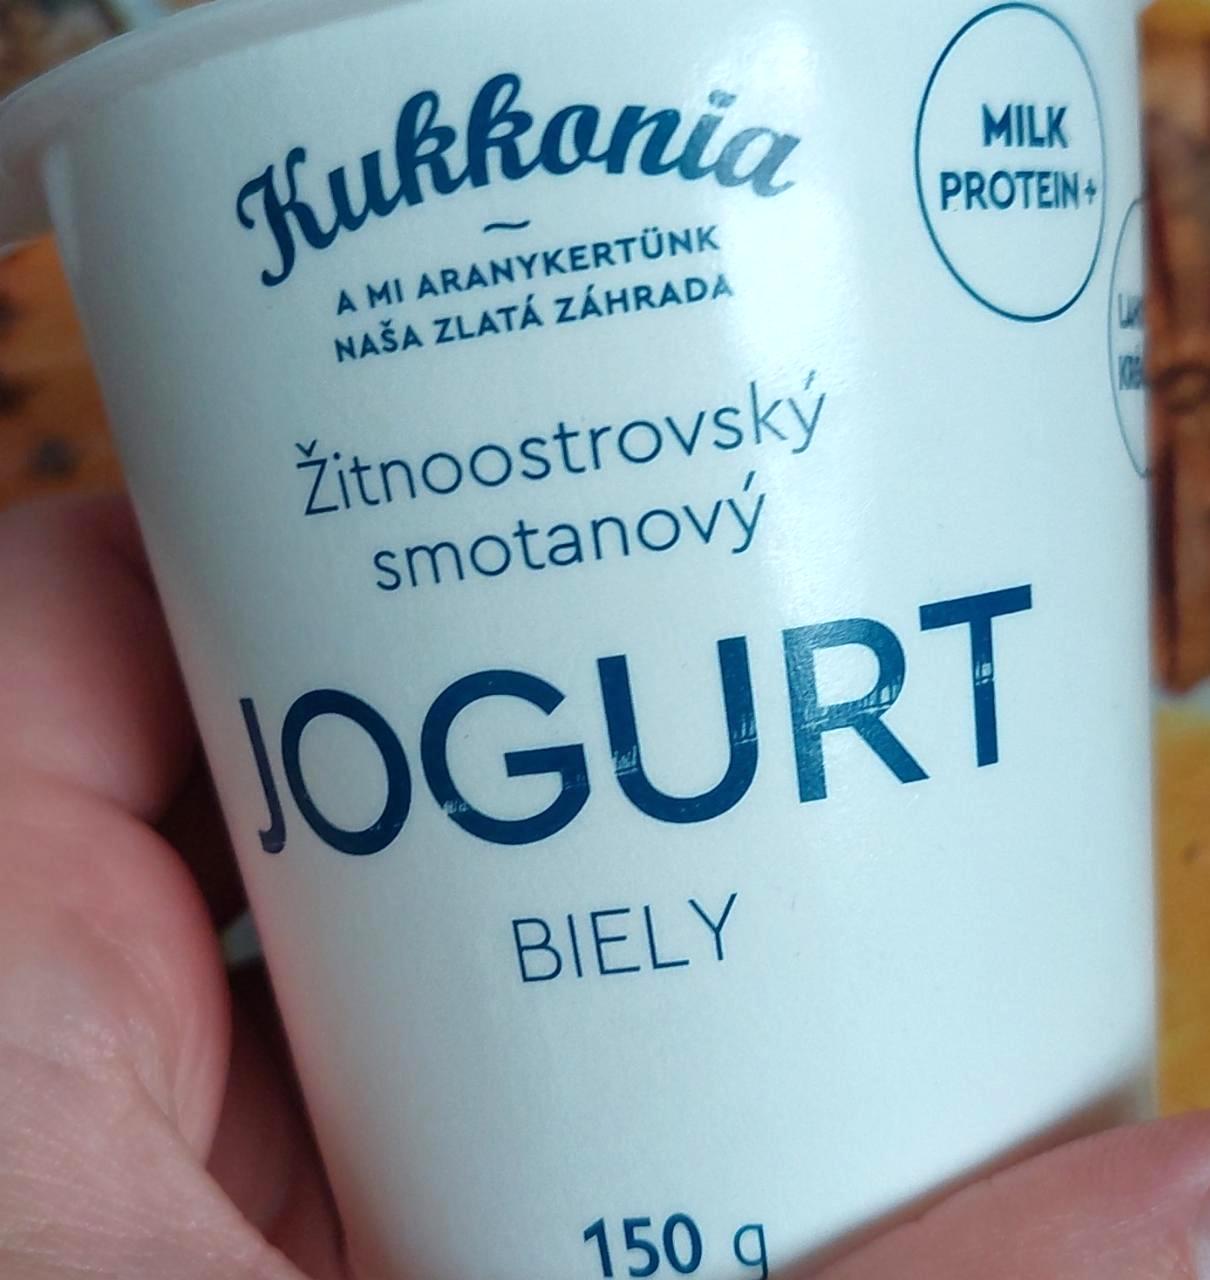 Képek - Fehér joghurt Žitnoostrovský smotanový jogurt Kukkonia